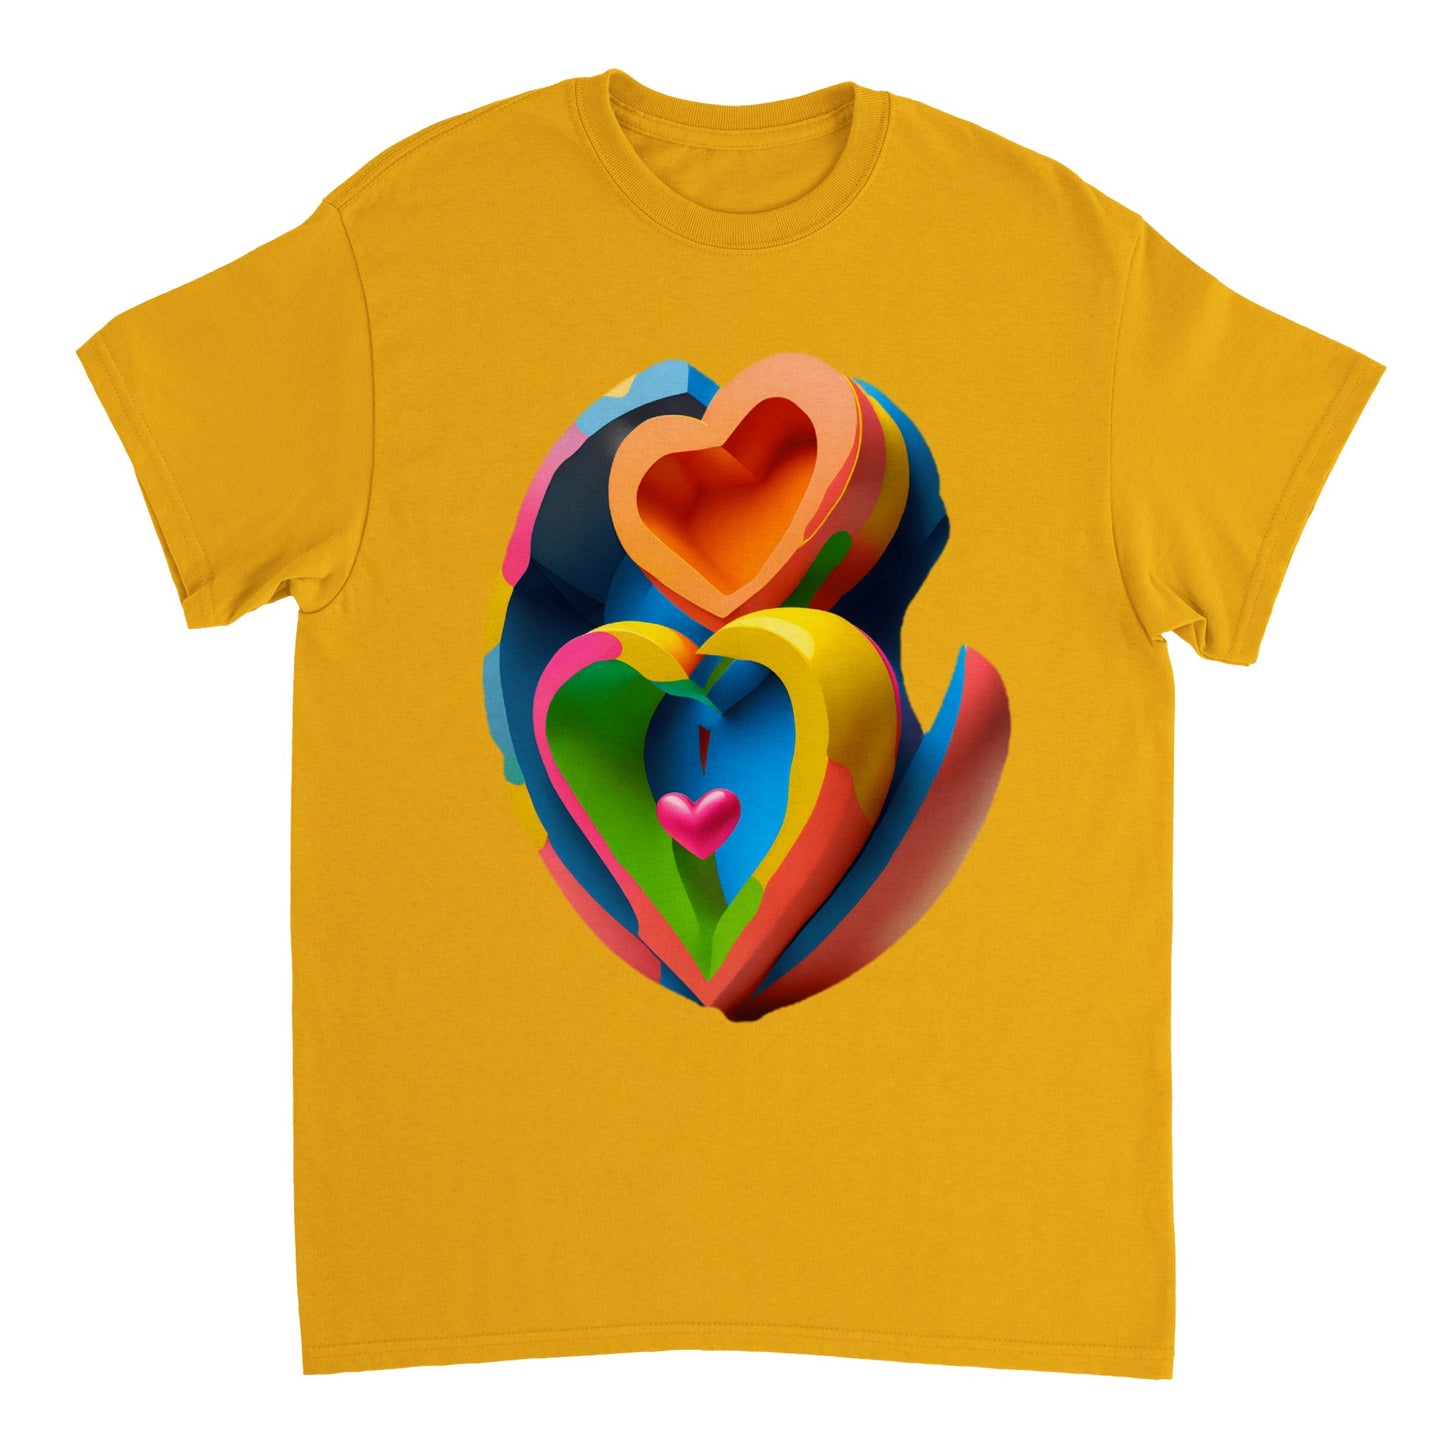 Love Heart - Heavyweight Unisex Crewneck T-shirt 22